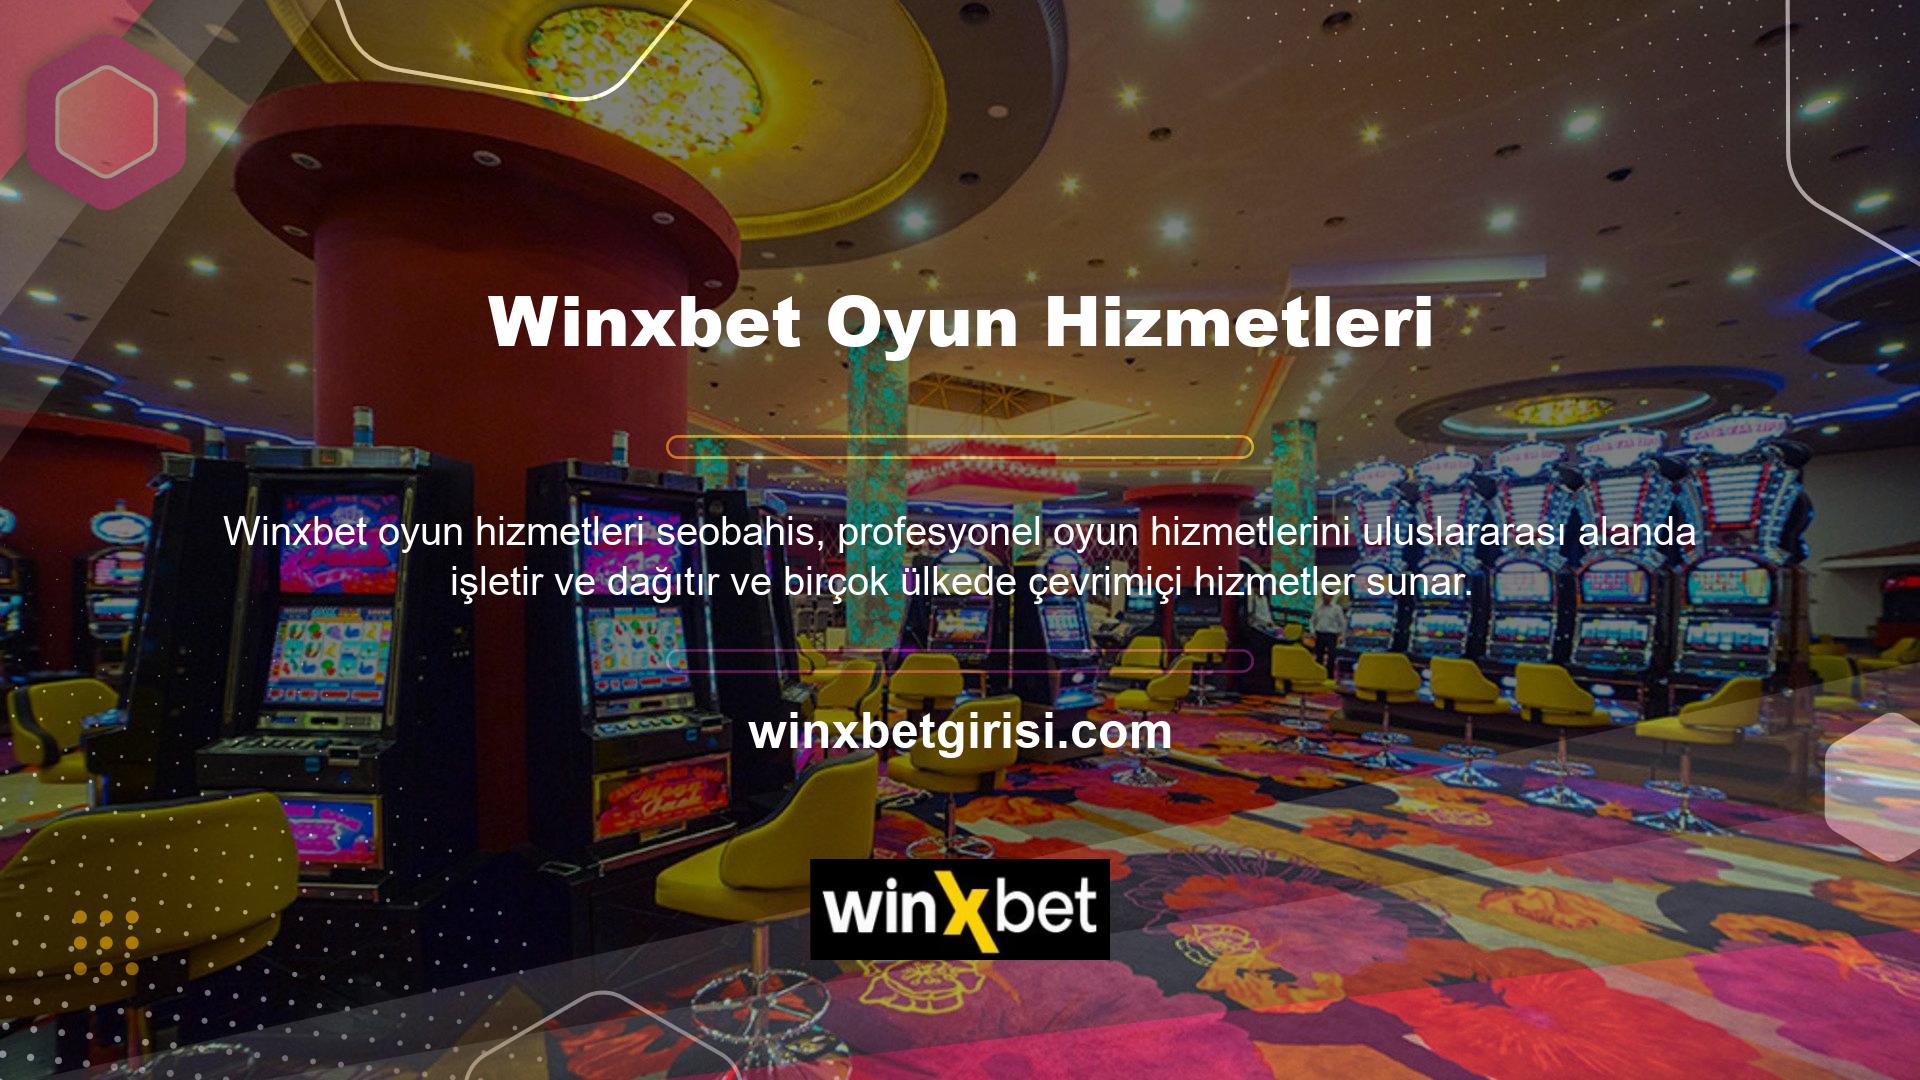 Bazı ülkelerde daha fazla casino ofisi ve Winxbet oyun hizmetleri de bulunmaktadır